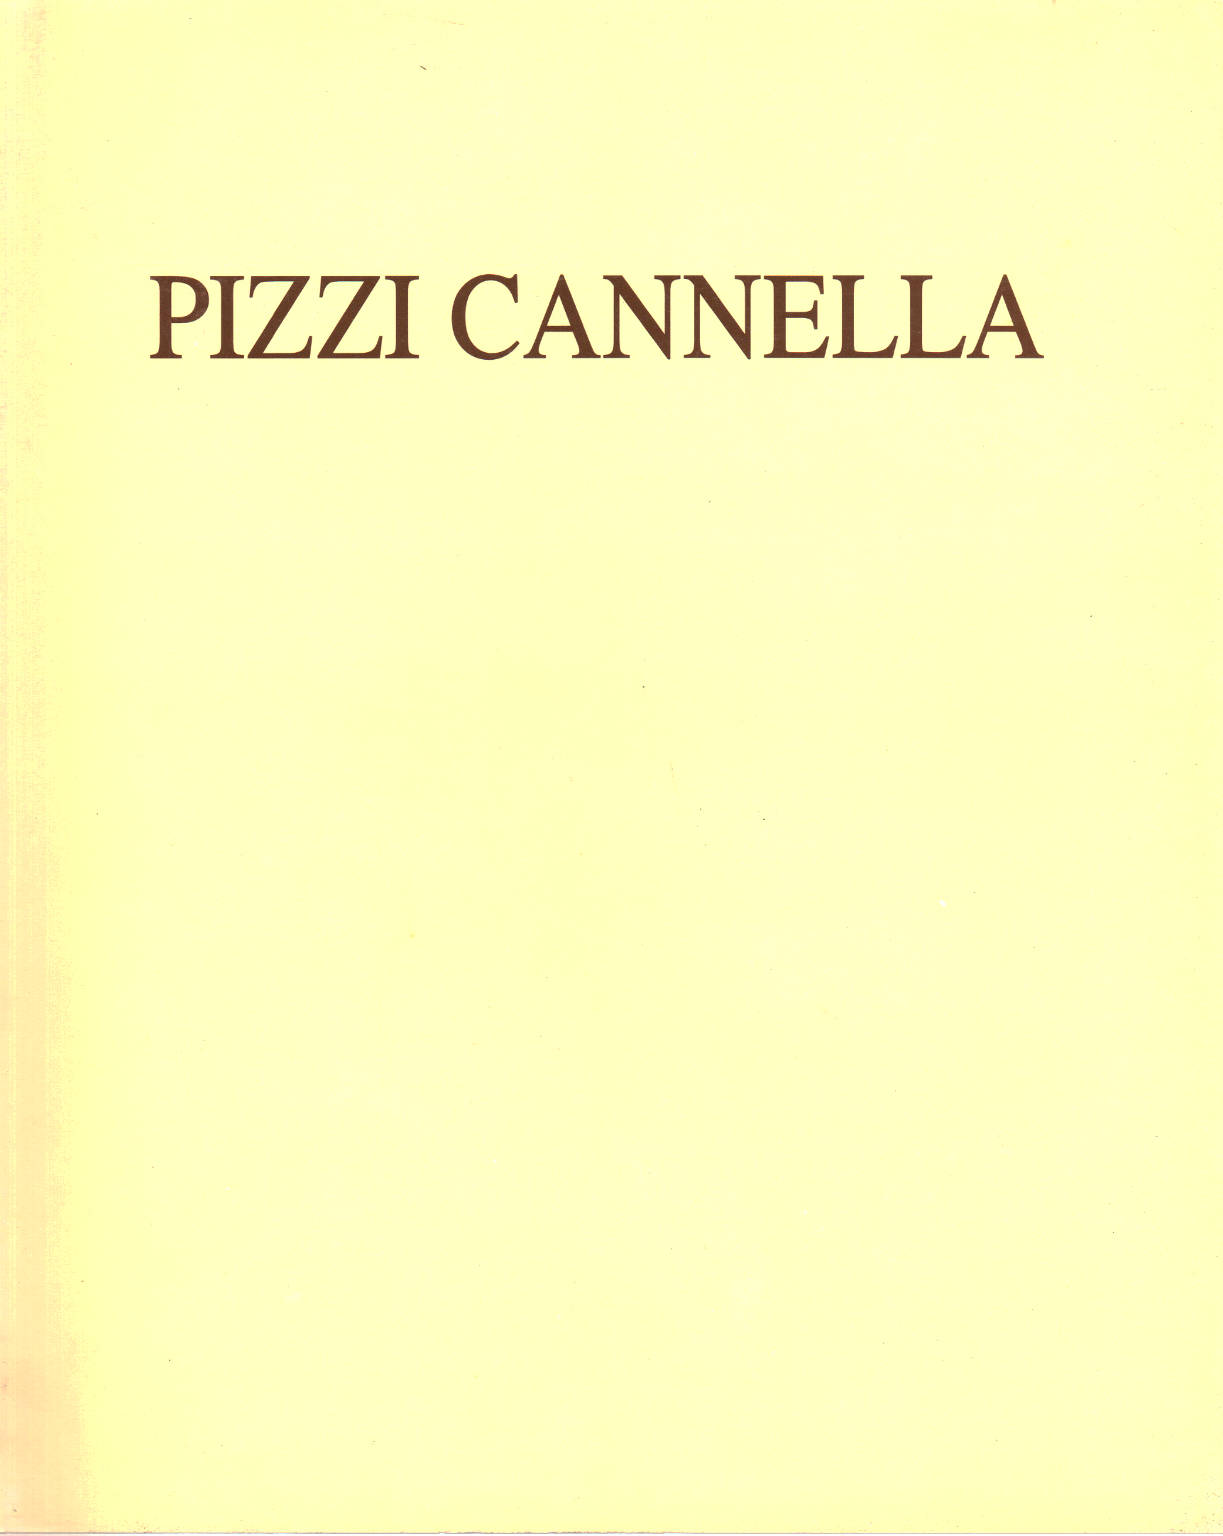 Pizzi Cannella, Enrico Gallian